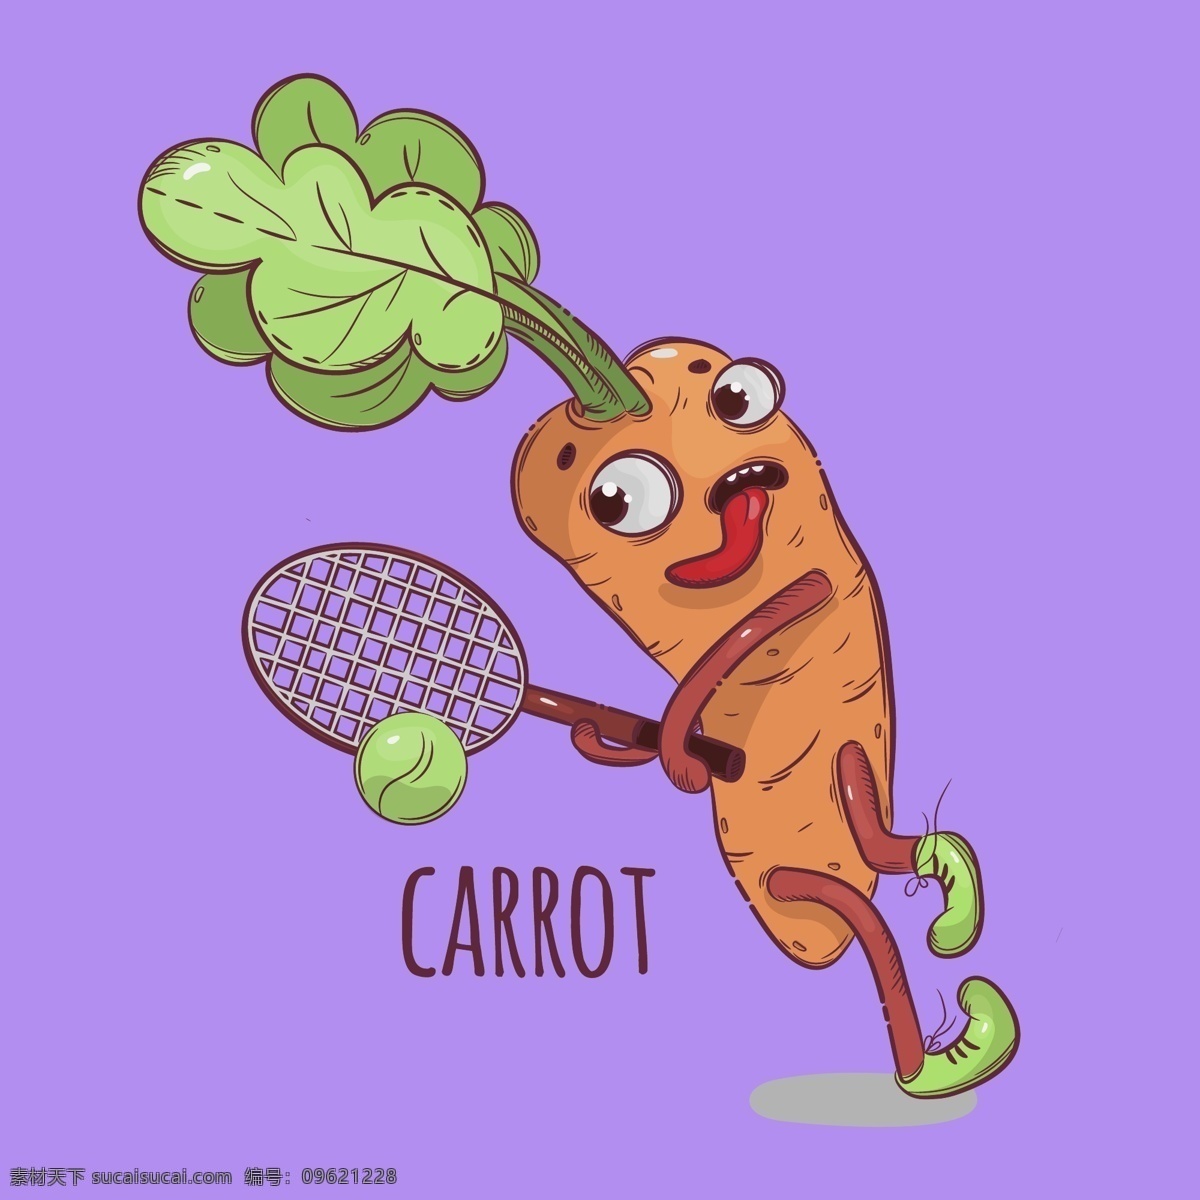 卡通蔬菜 卡通 手绘 淡彩 卡哇伊 可爱 漫画 插画 卡通设计